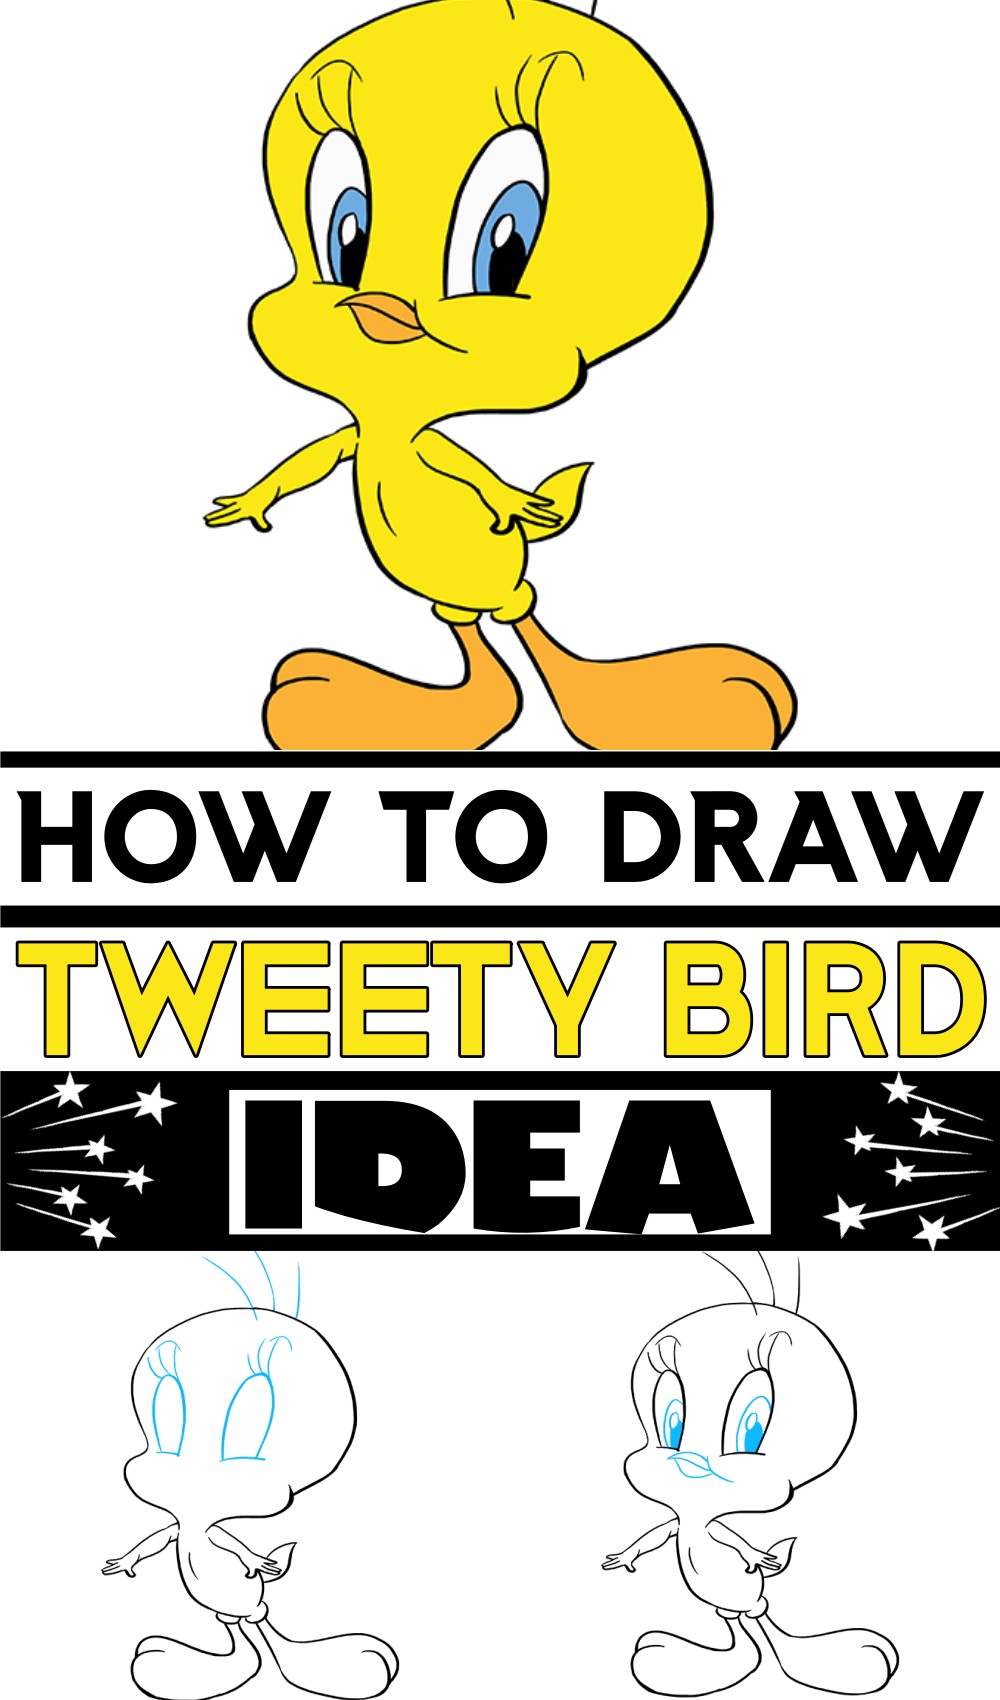 How To Draw Tweety Bird